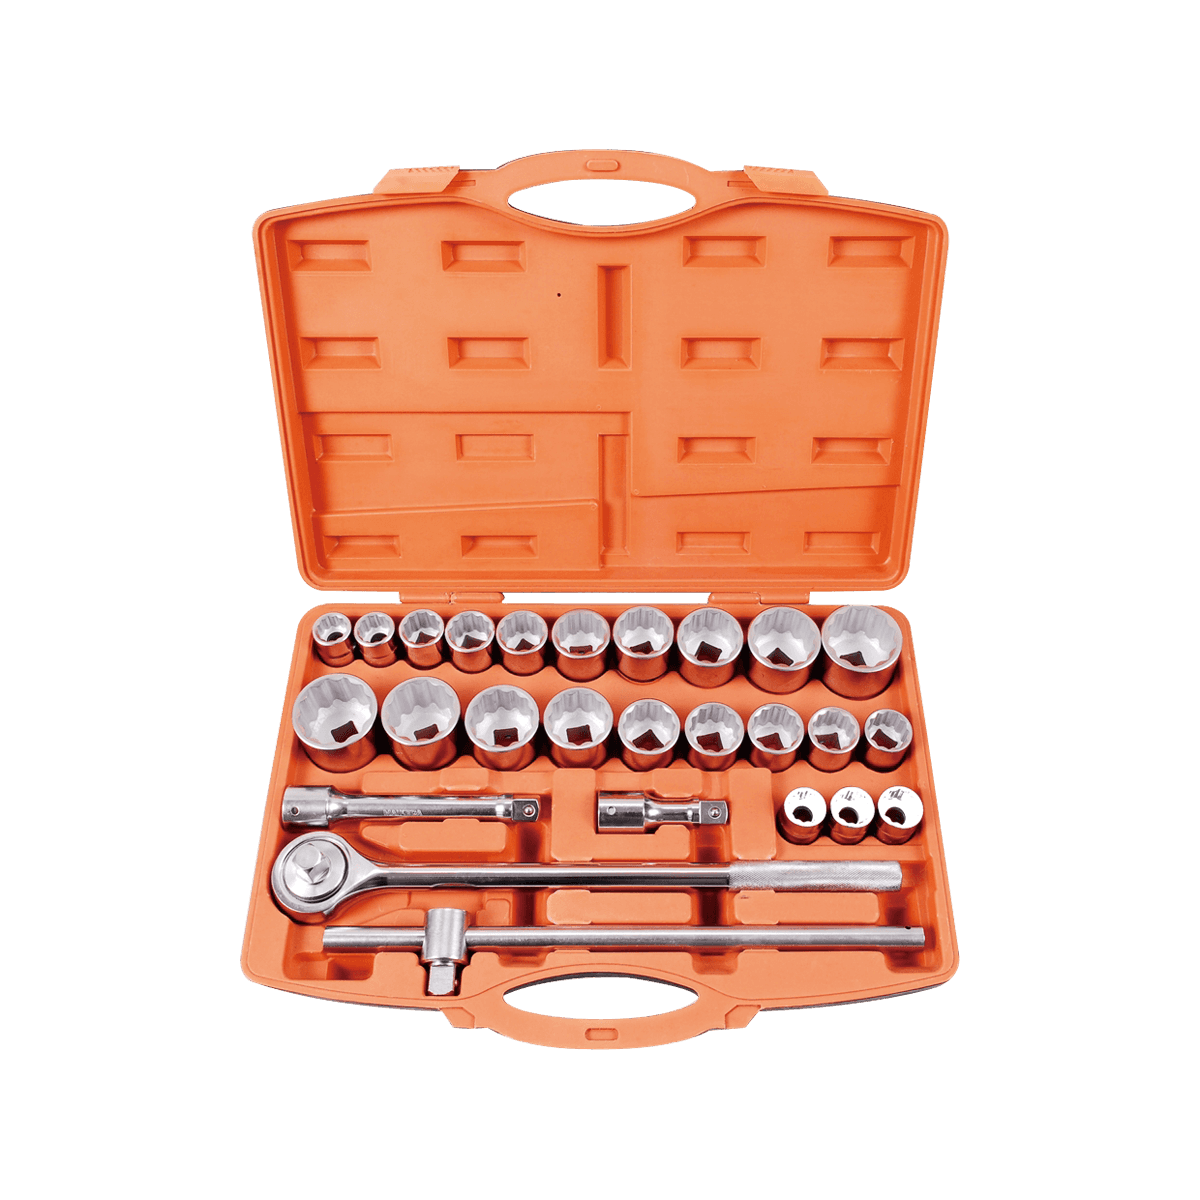 27 Frusta Tools Herramientas ferramentas ornamentum 3/4 Inch Drive Gravis Officii Impact Socket convellit Set For Auto Car Repair Tools